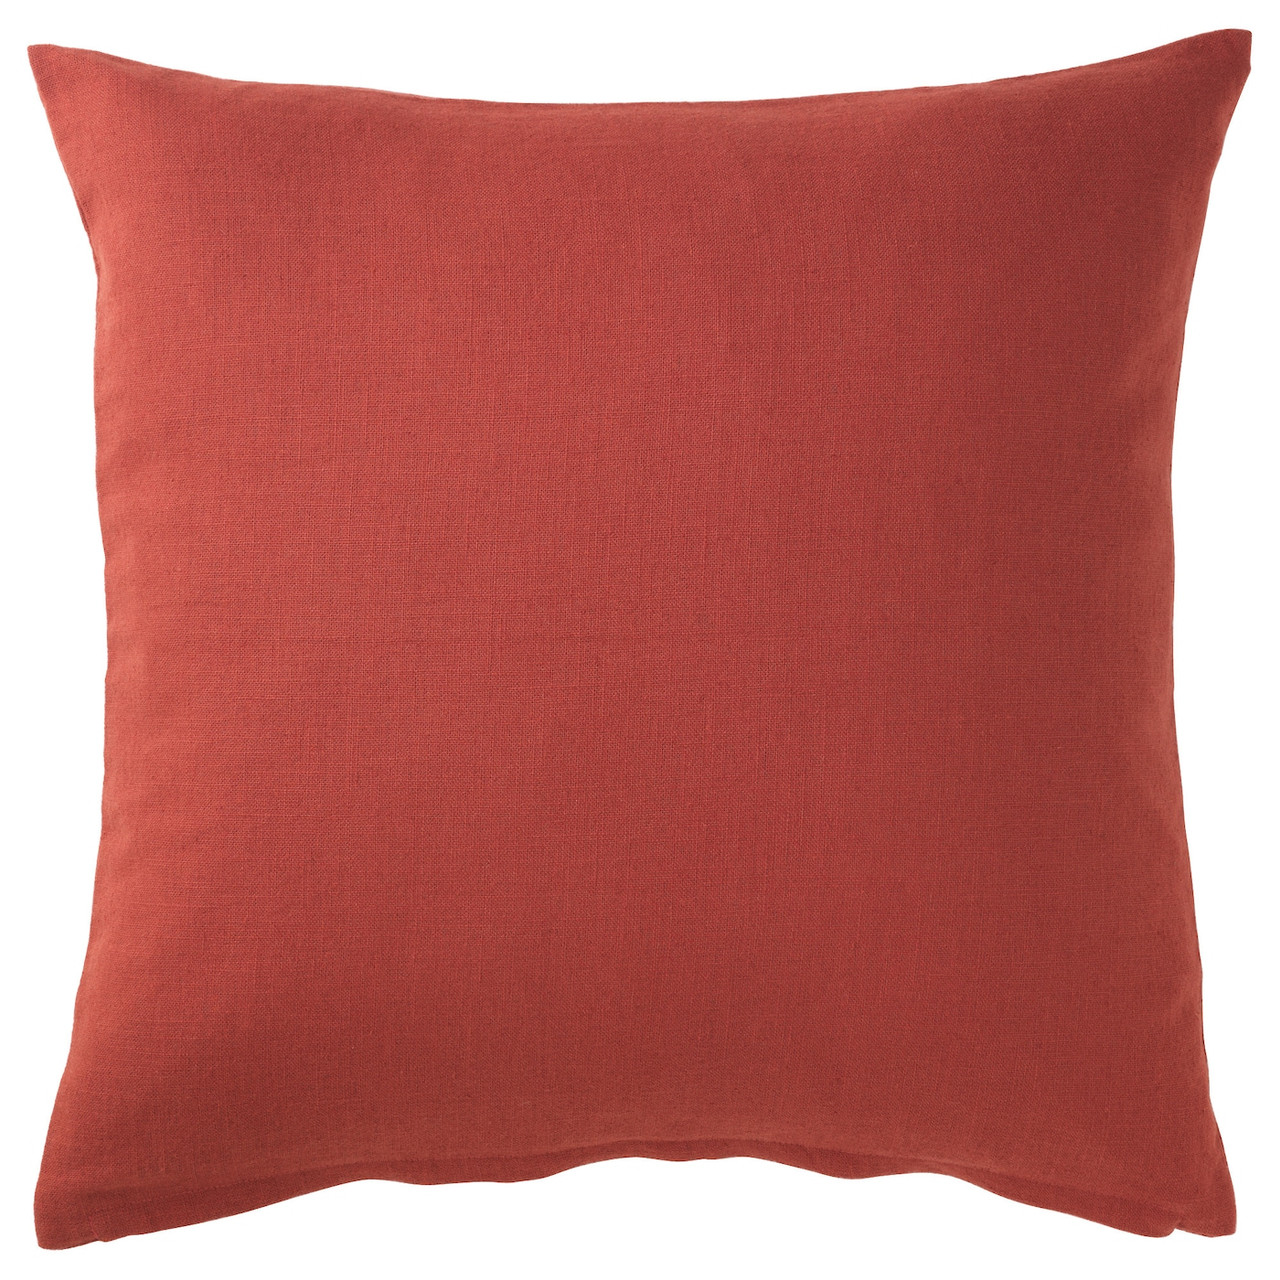 IKEA/ ВИГДИС Чехол на подушку, красно-оранжевый 50x50 см, фото 1